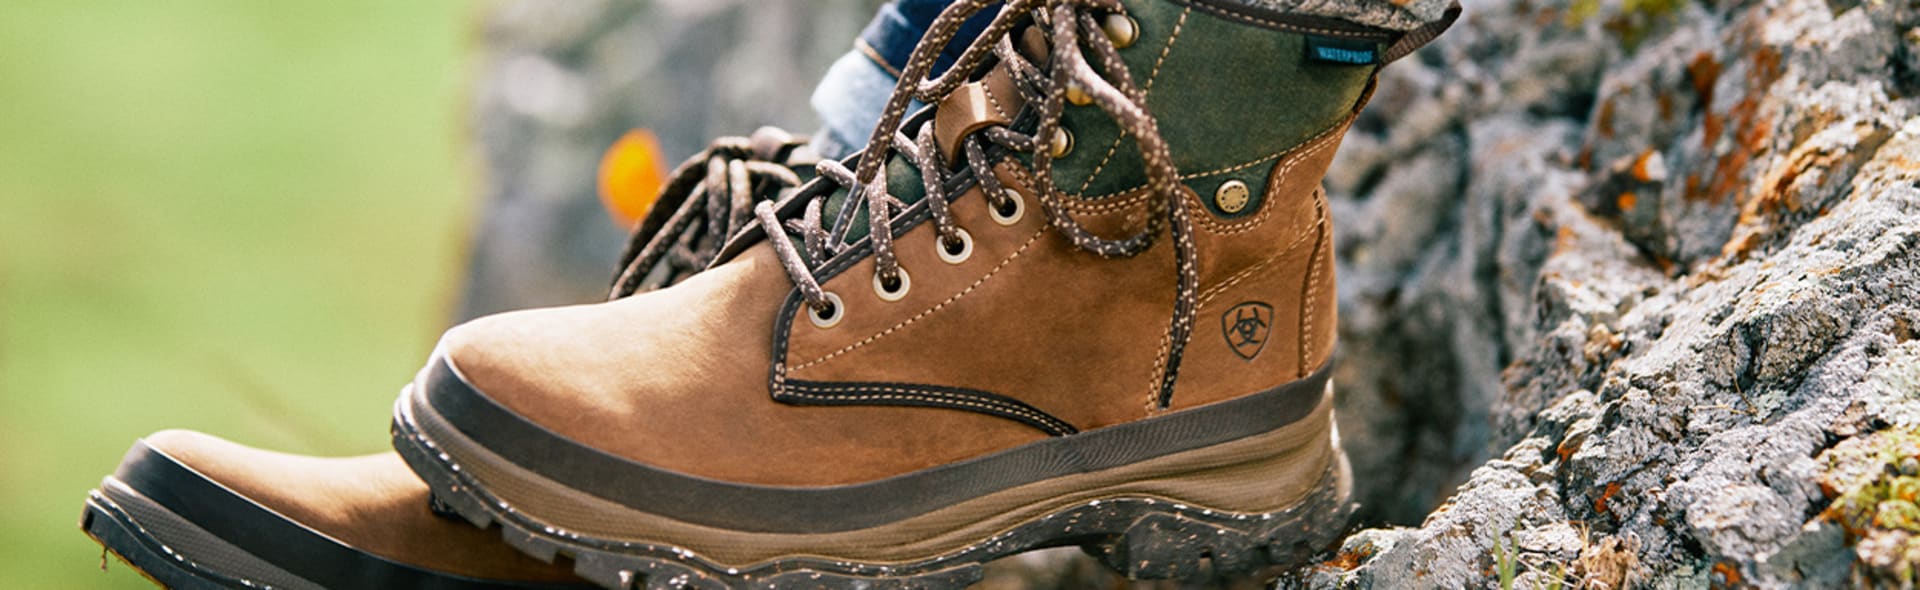 Comment porter les hiking boots cet hiver, les chaussures qui séduisent  autant qu'elles divisent ?